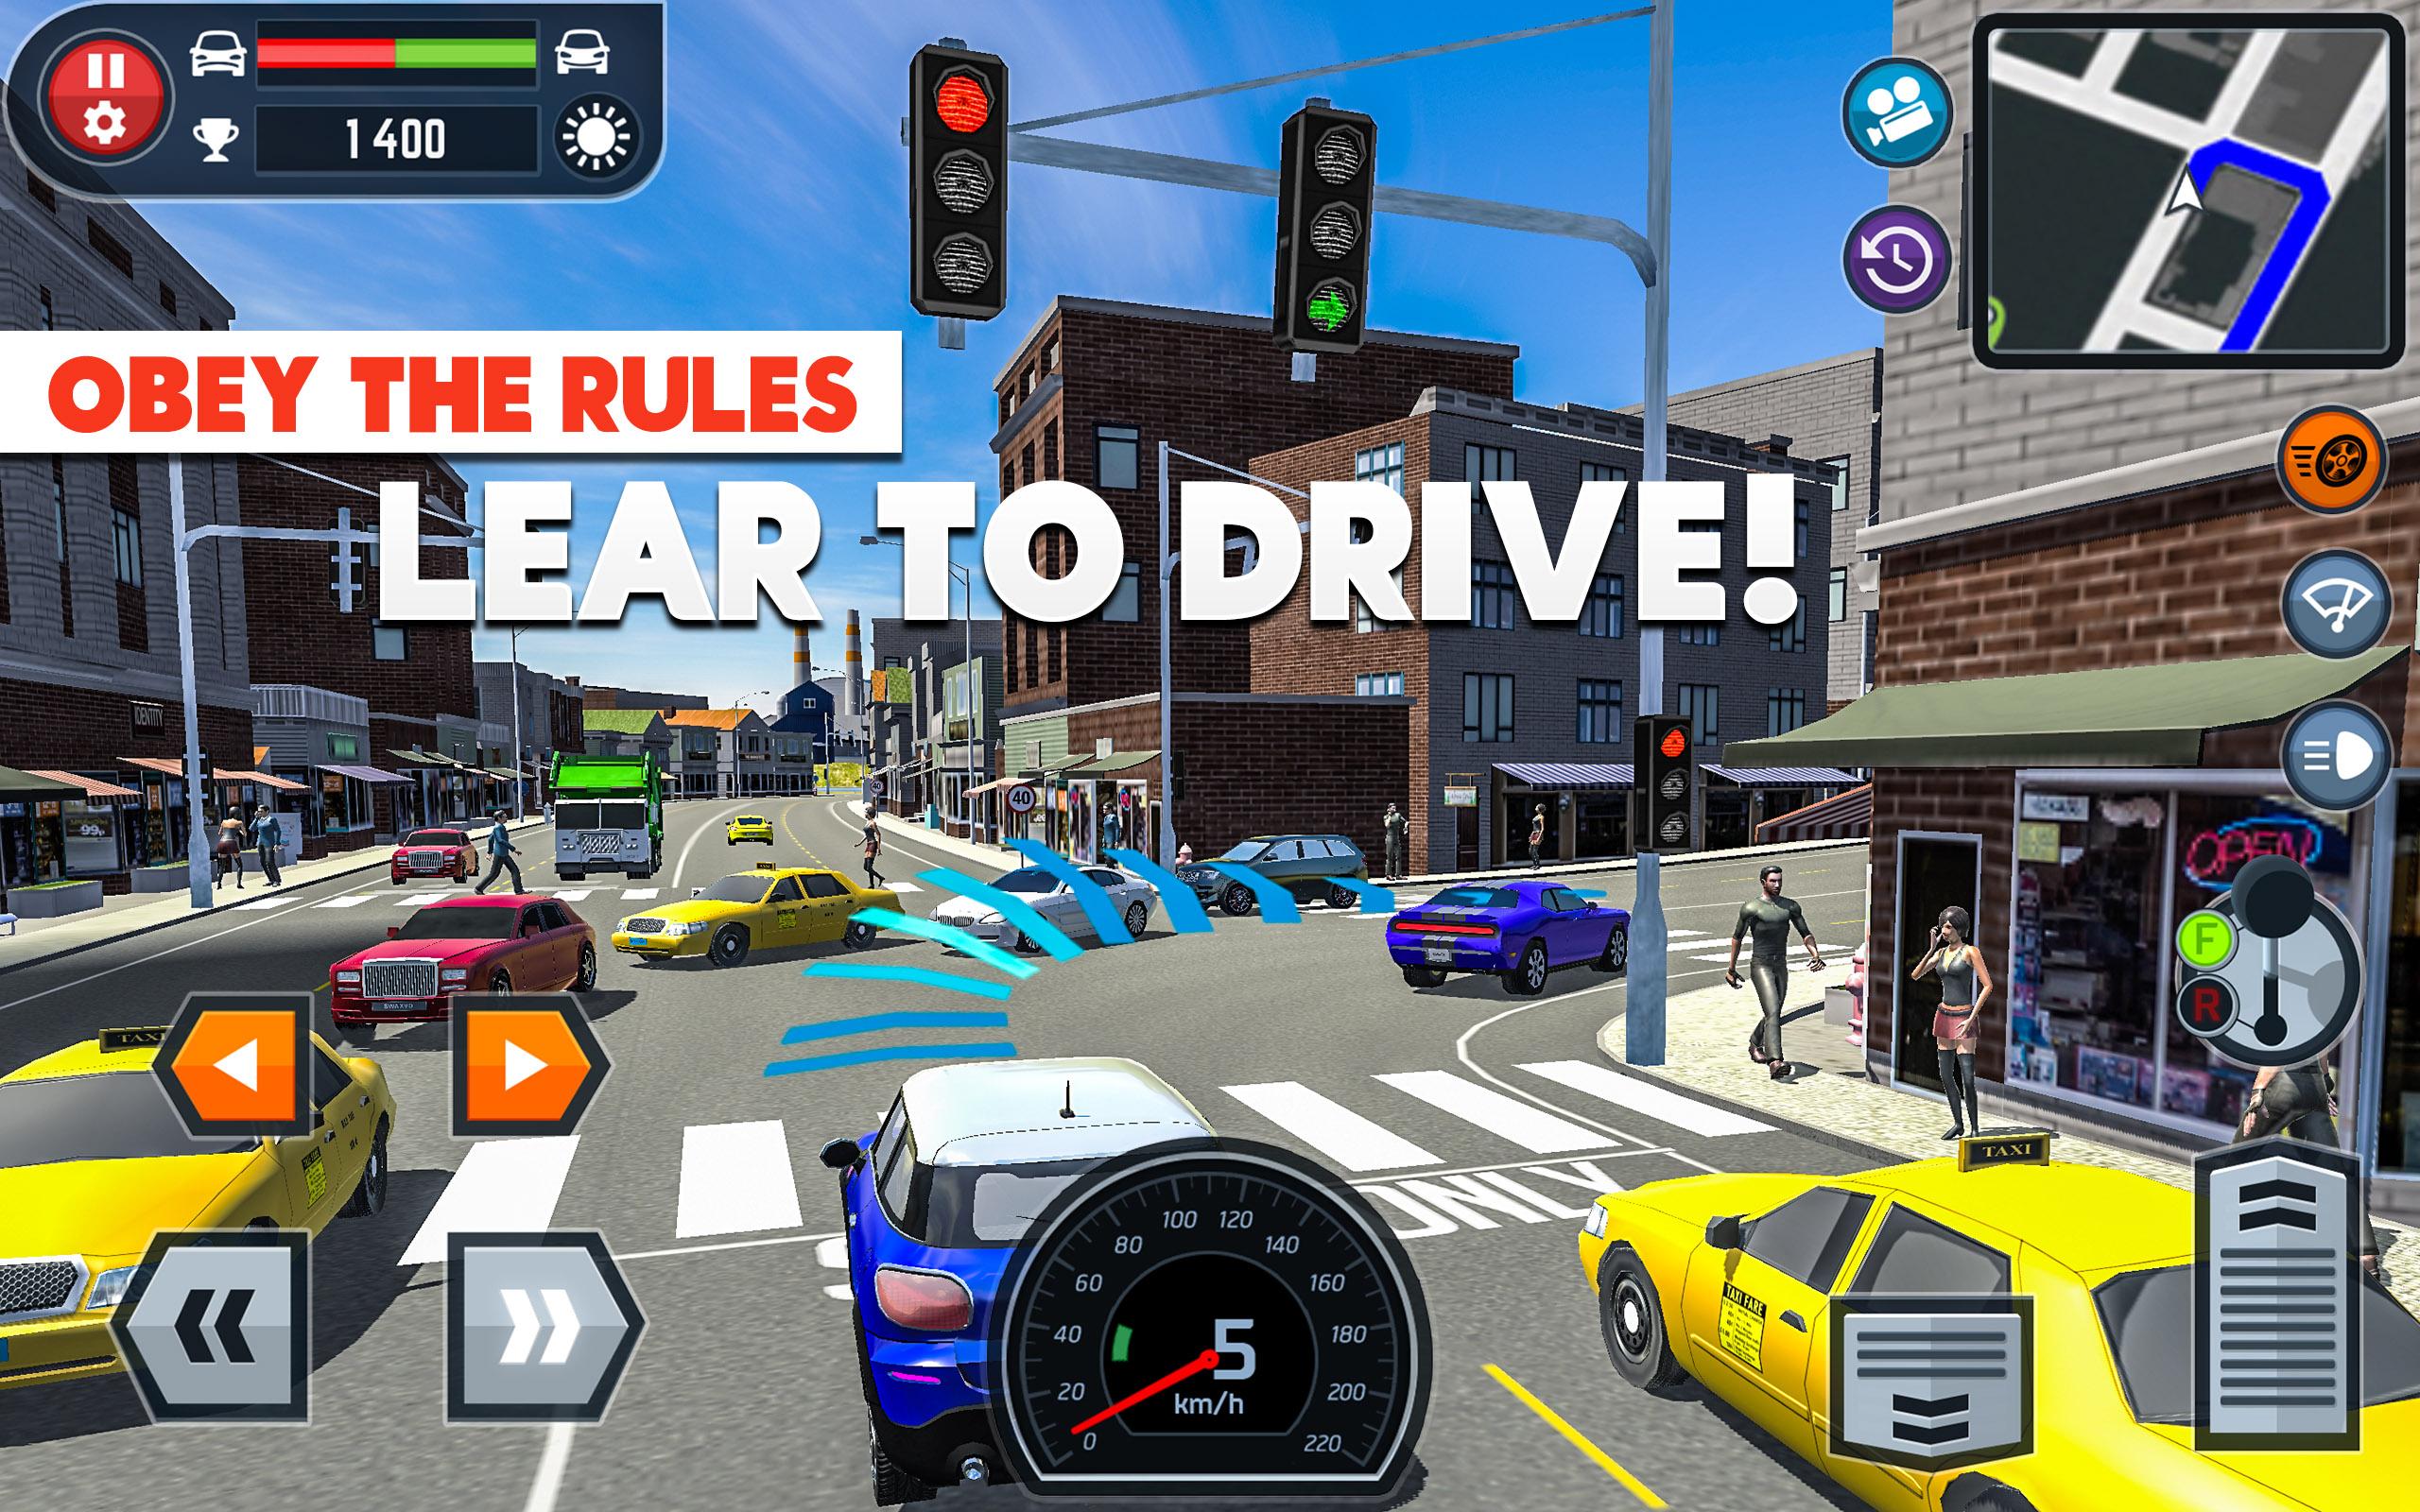 car-driving-school-simulator-apk-3-2-0-download-for-android-download-car-driving-school